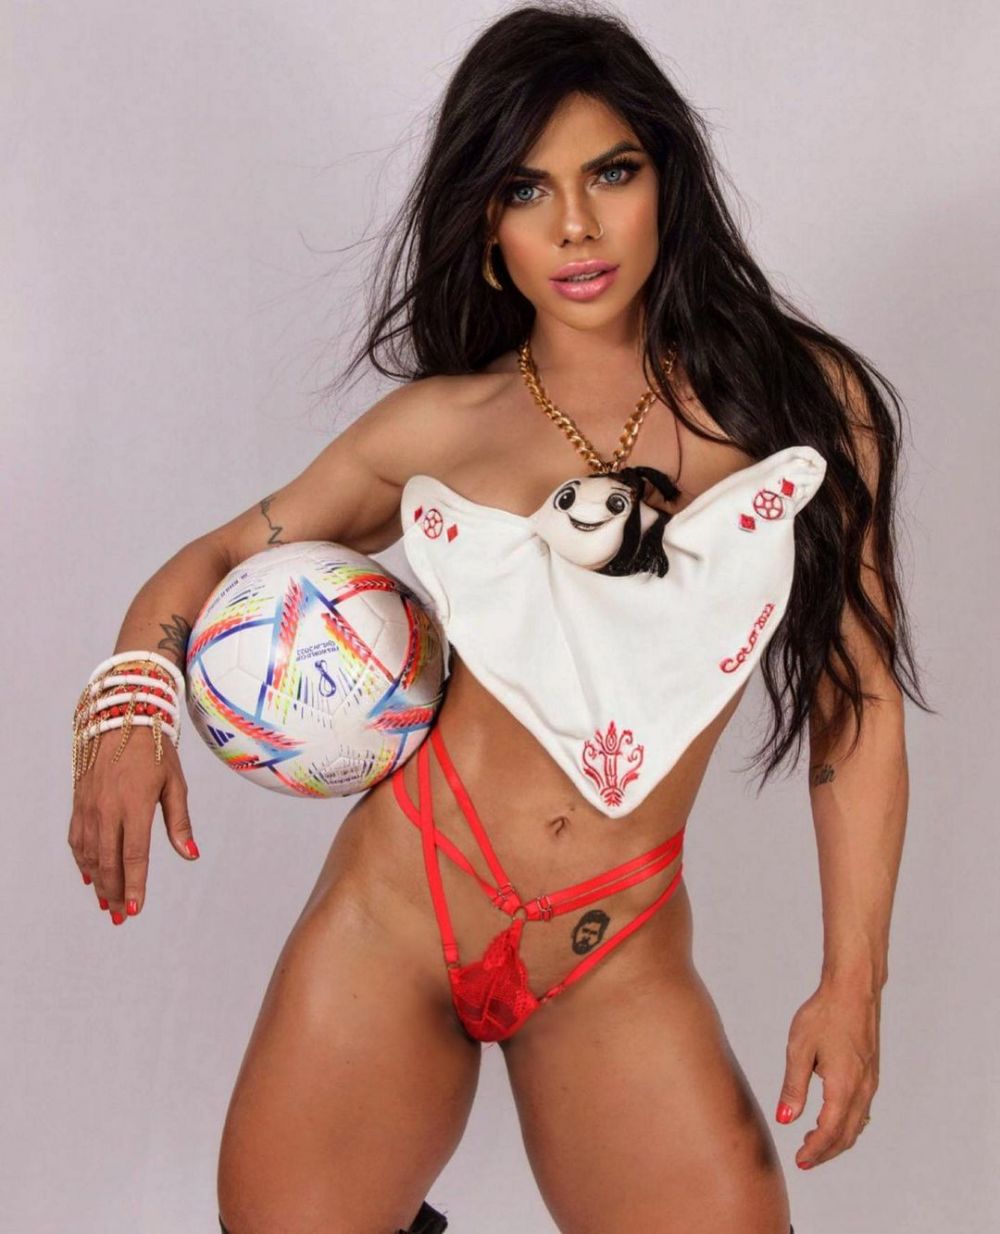 Brazilianca Susy Cortez, desemnată miss BumBum, susține echipa Argentinei printr-o ședință foto incendiară. Cum a pozat bruneta _10